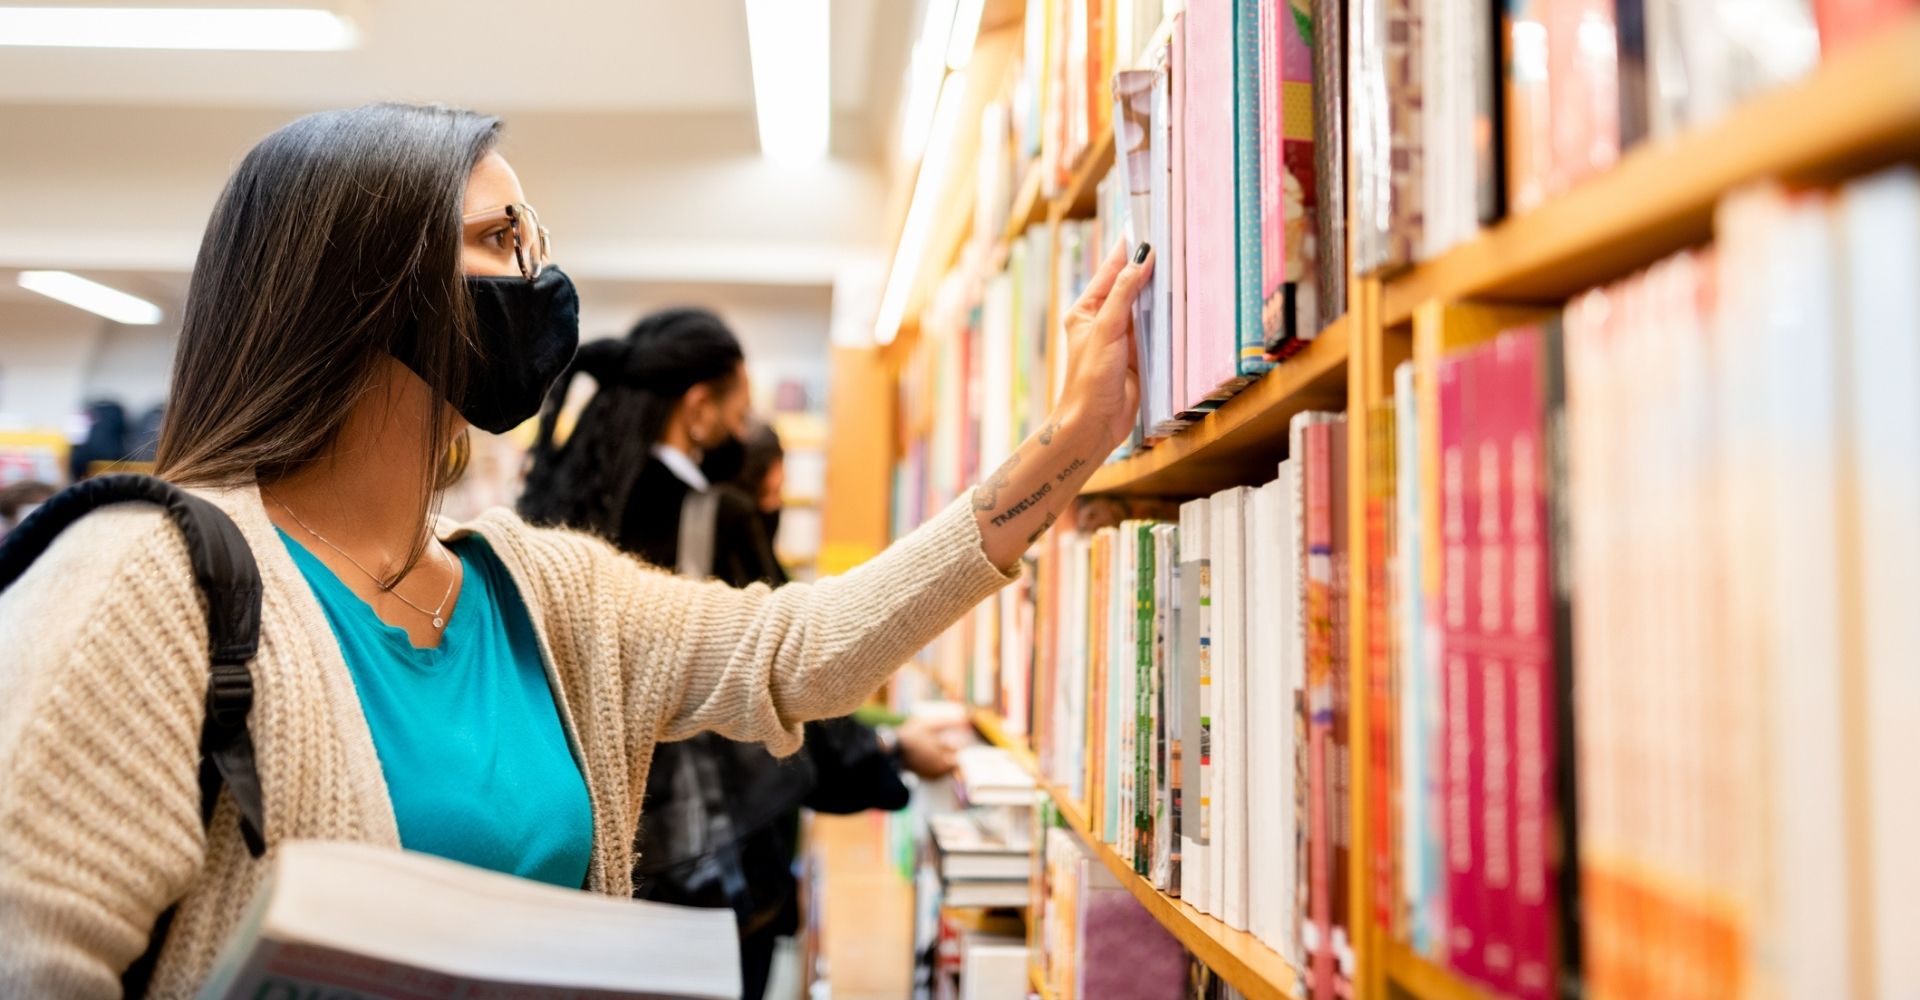 libreria scaffali scaffale libro libri lettura leggere ragazza mascherina donna libri